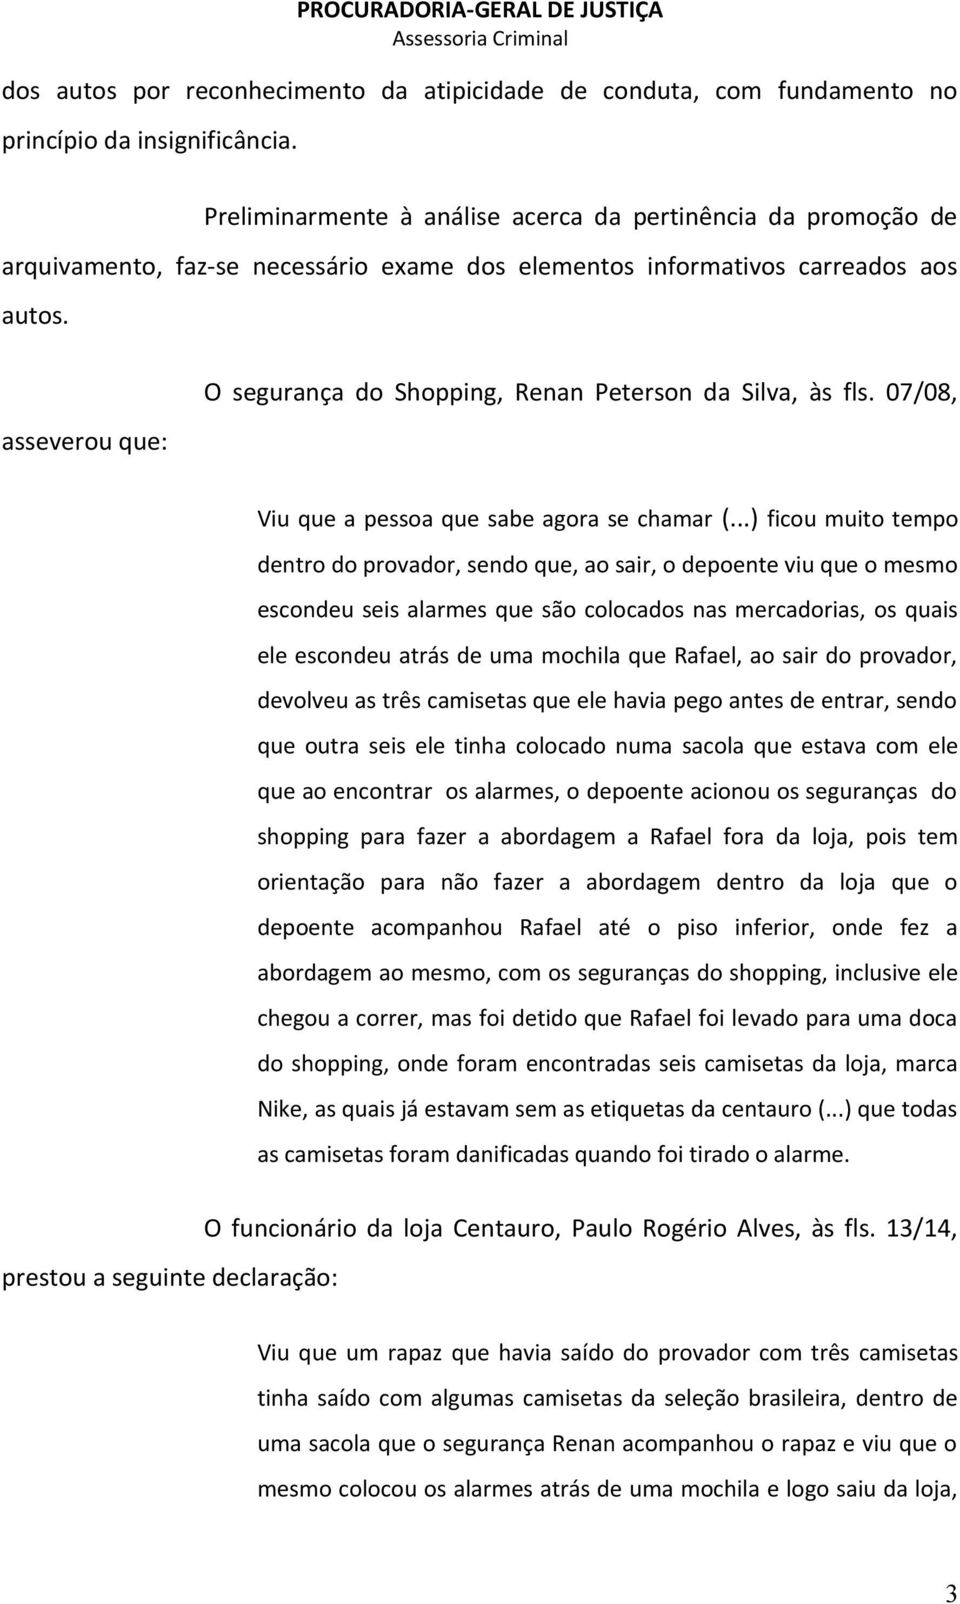 asseverou que: O segurança do Shopping, Renan Peterson da Silva, às fls. 07/08, Viu que a pessoa que sabe agora se chamar (.